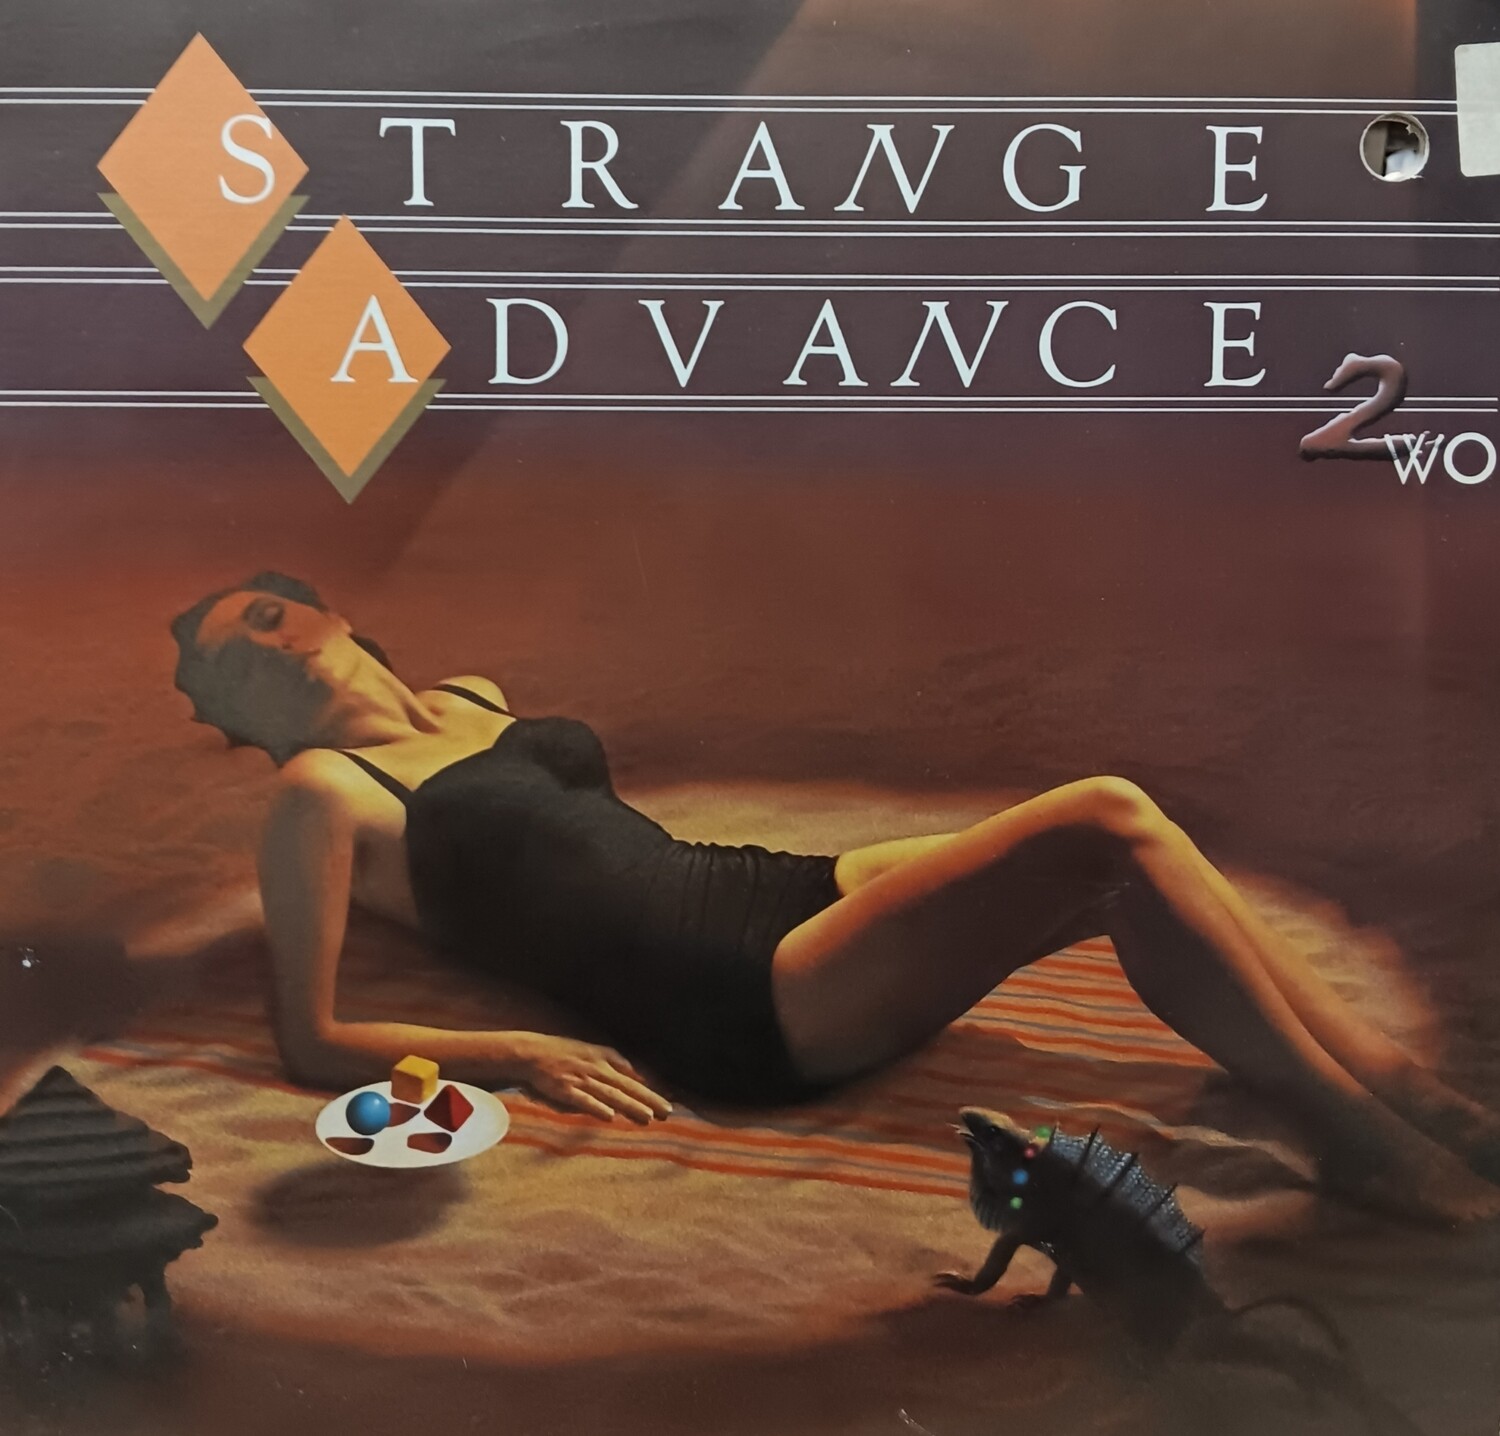 Strange Advance - 2WO